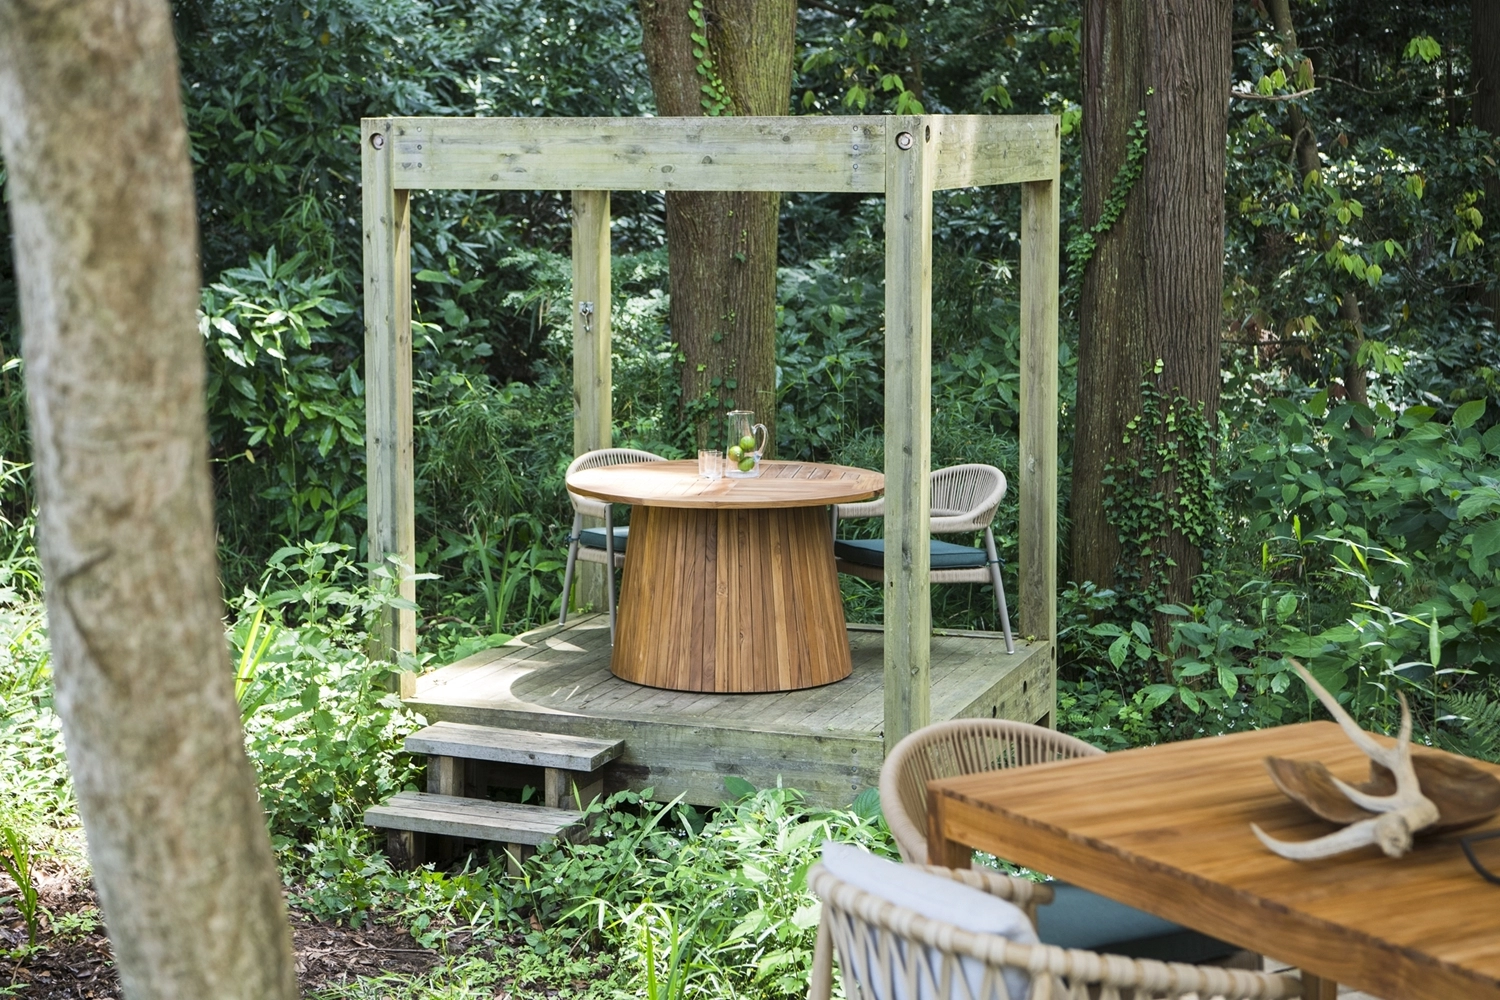 TW22 ガーデンダイニングテーブル / Garden Table